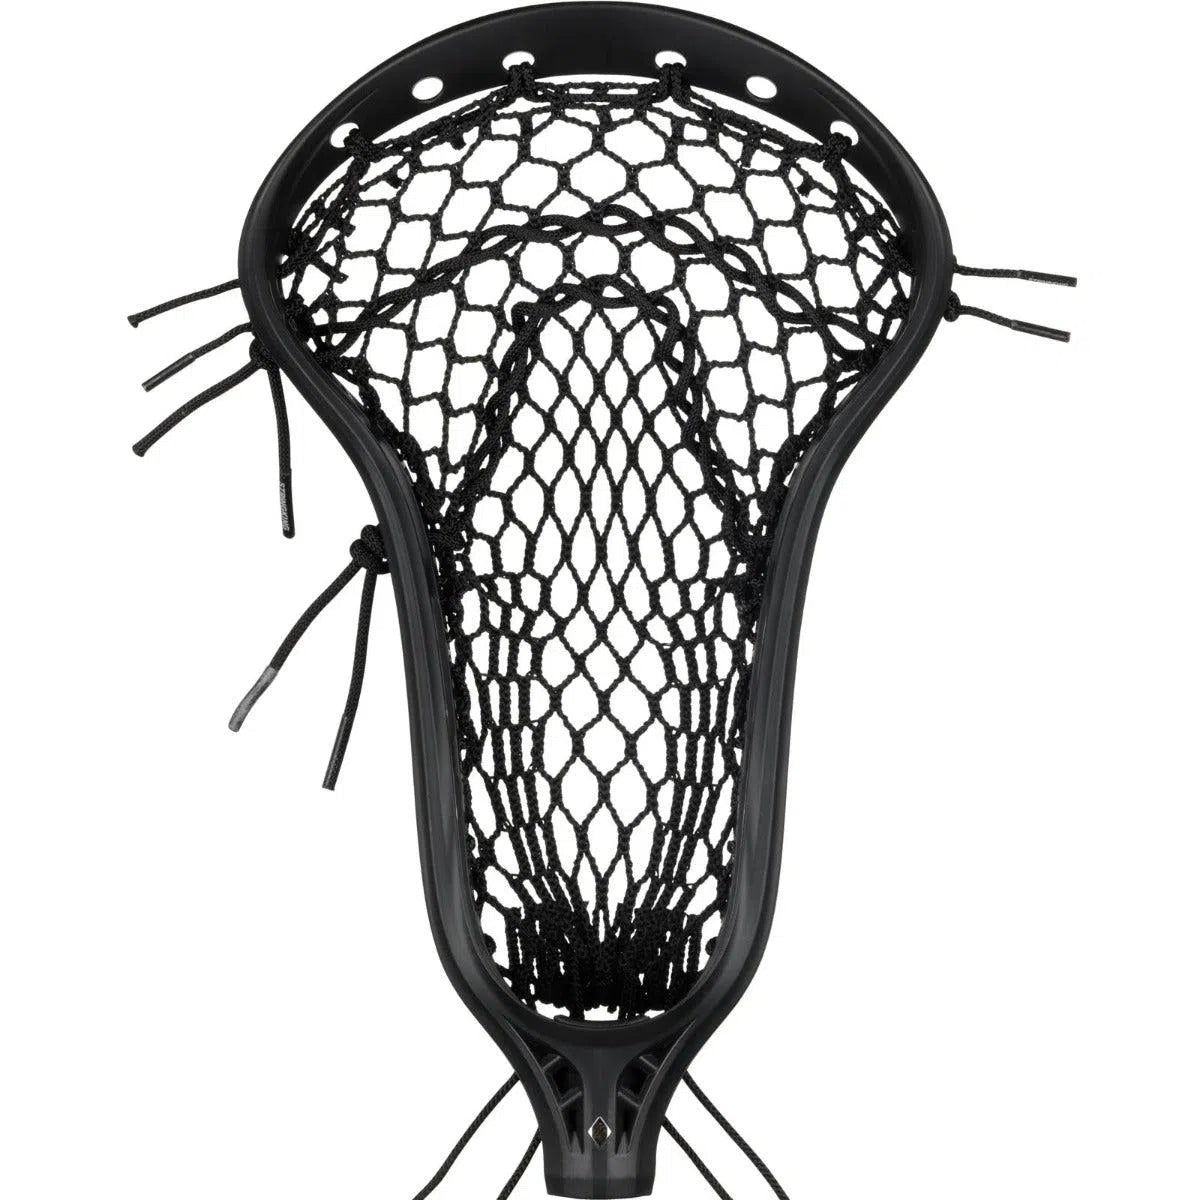 StringKing Mark 2 Midfield Women's Lacrosse Head